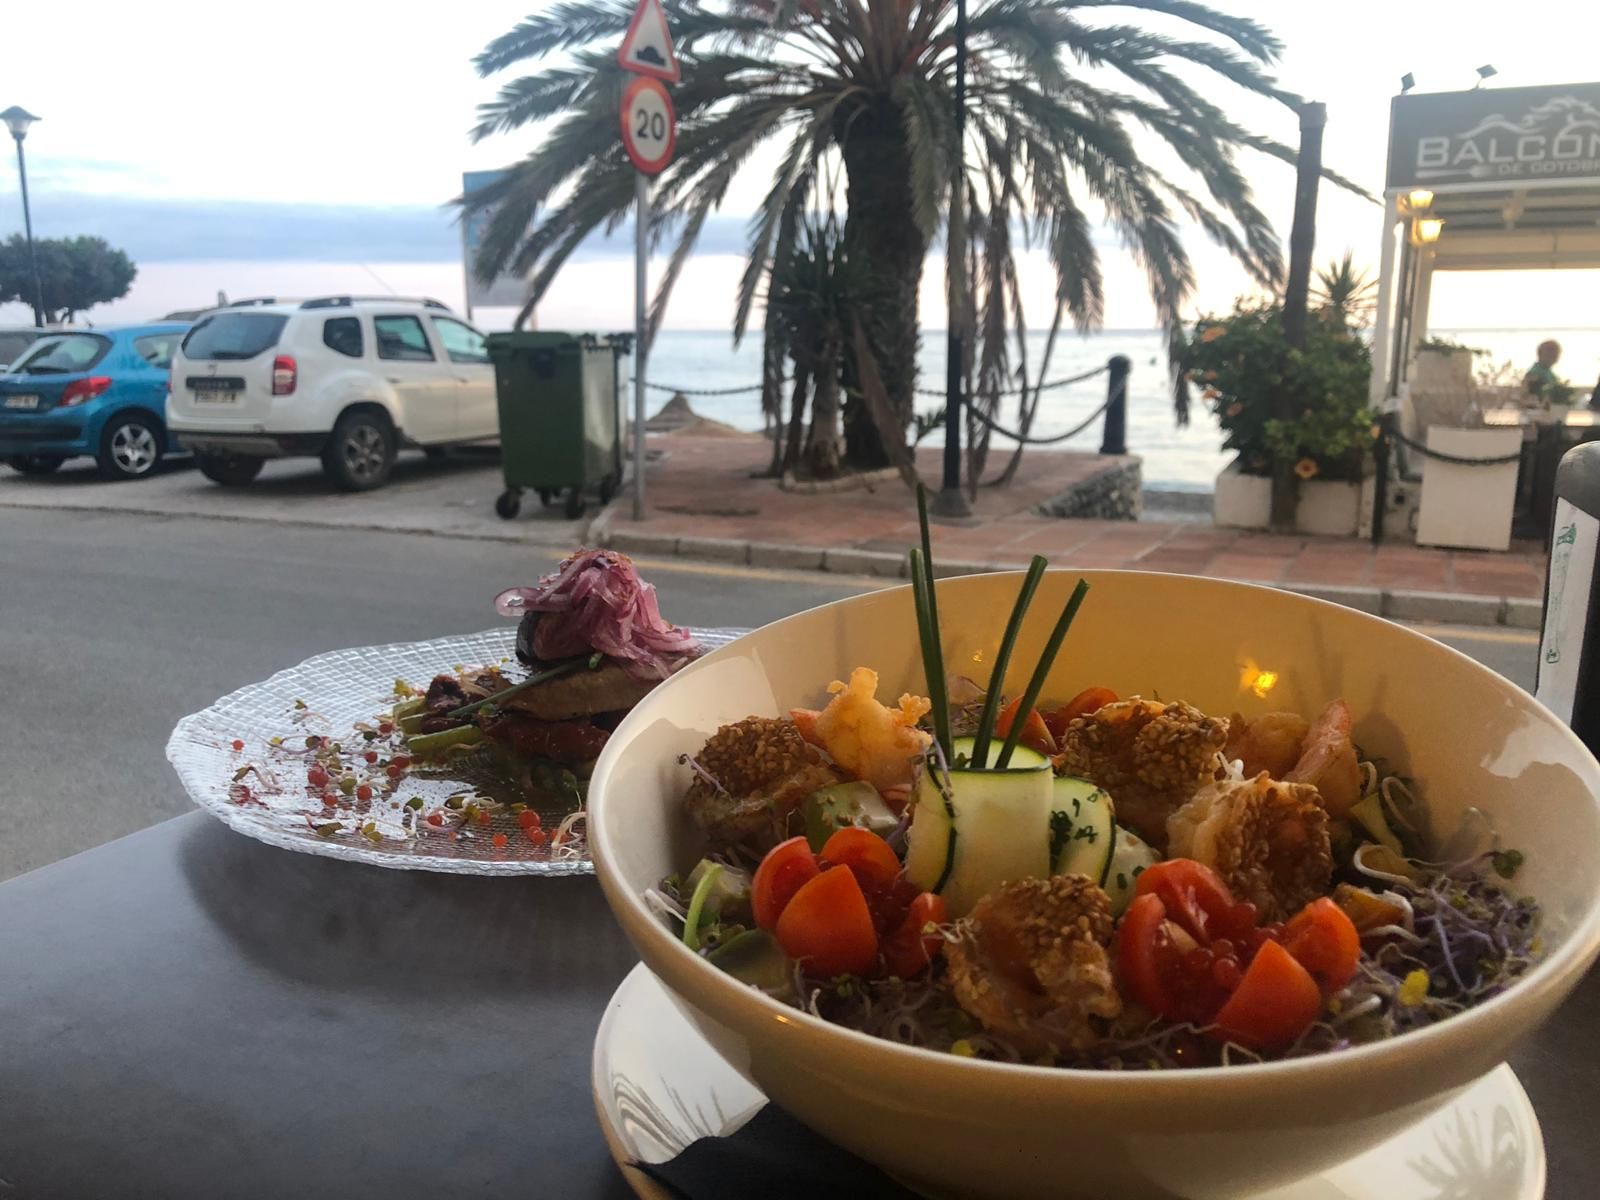 Foto 32 de Restaurante de cocina mediterránea en  | El Balcón de Cotobro